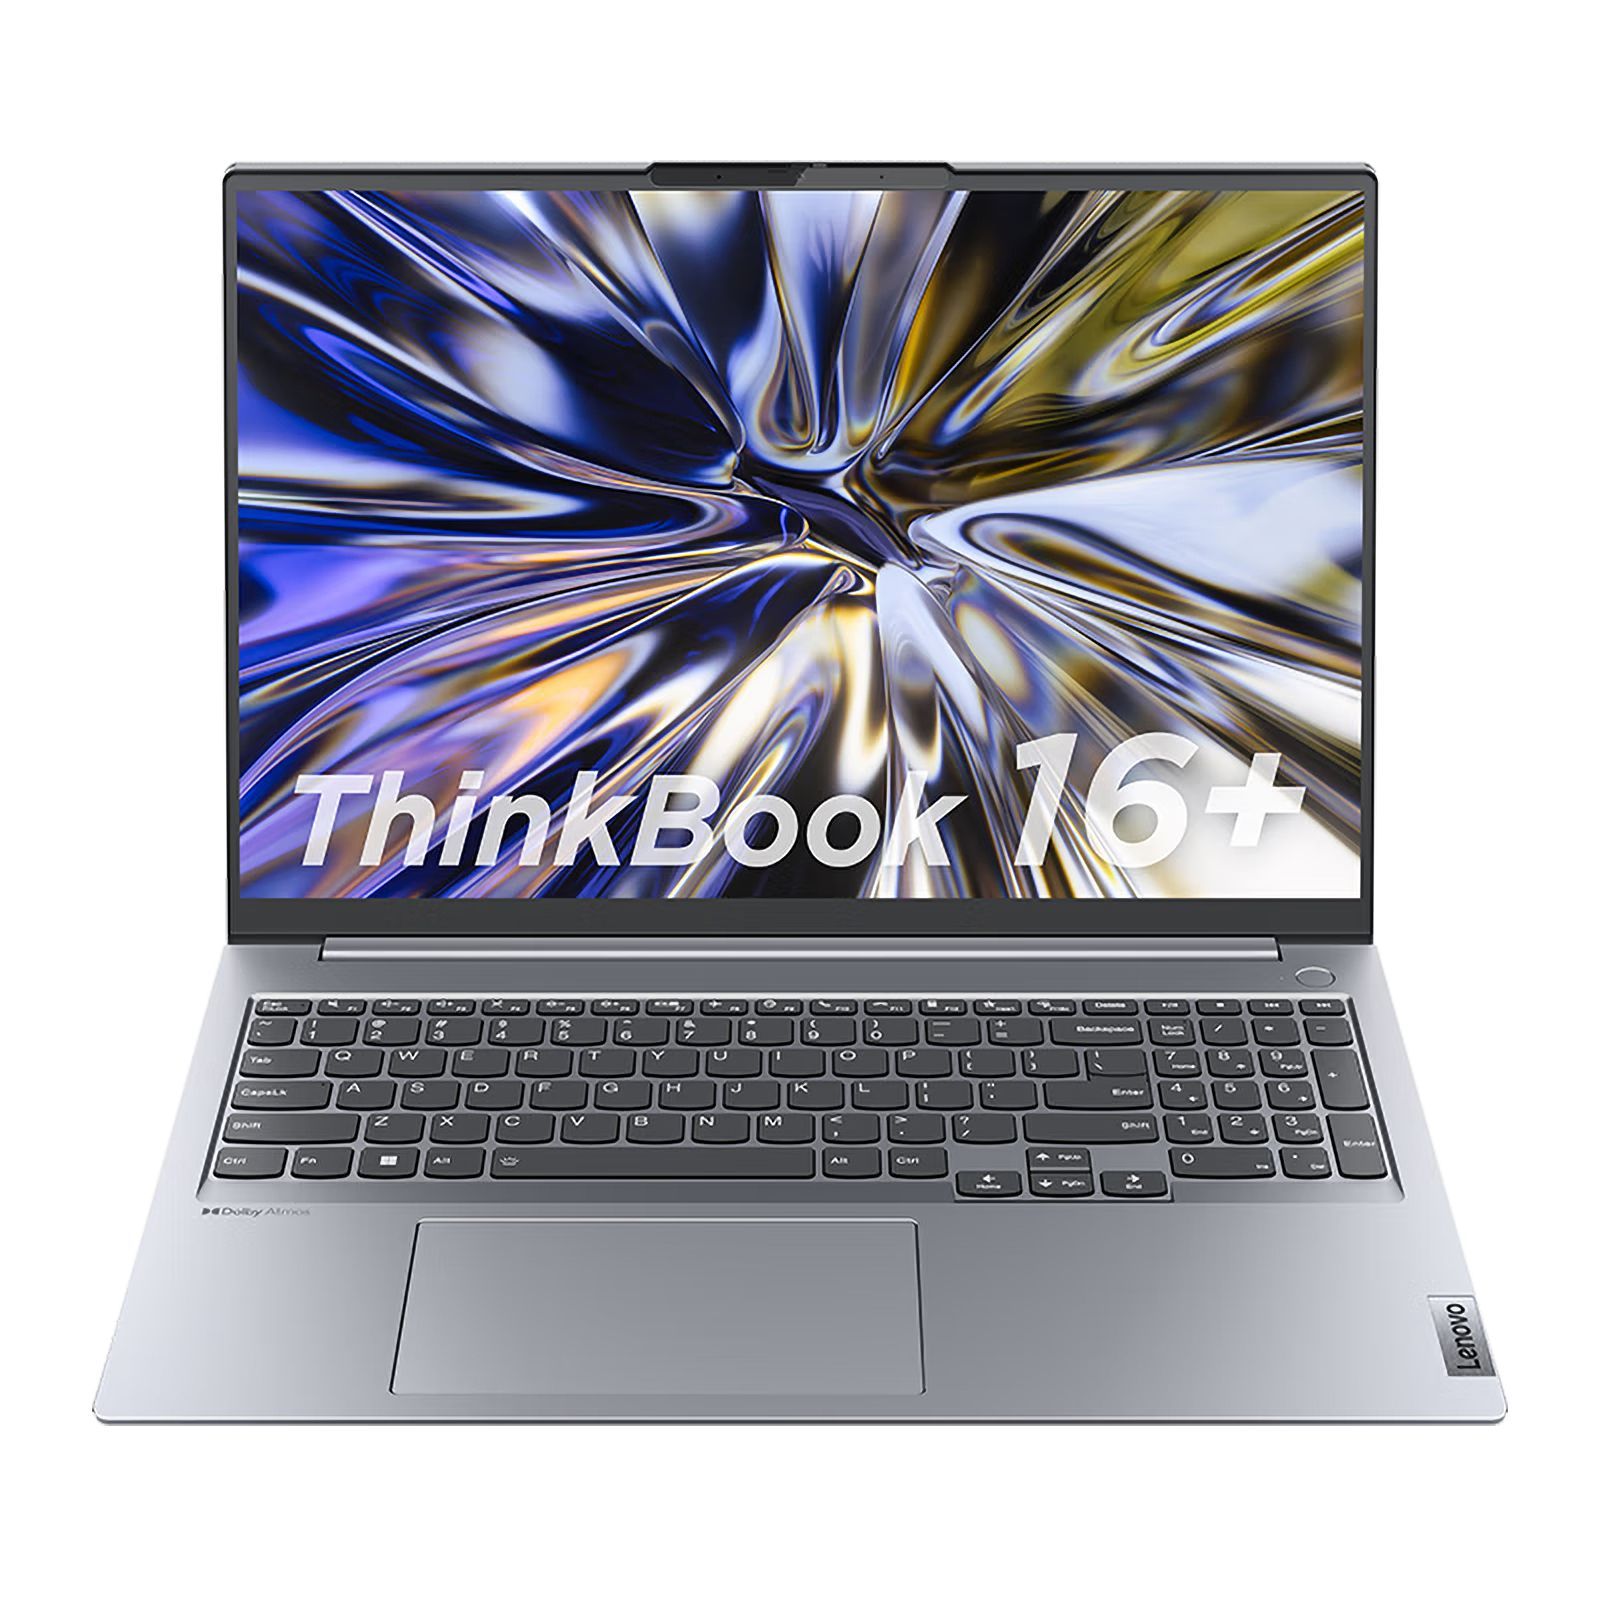 Ноутбук Lenovo ThinkBook 16 AMD, серебристый, серый купить по низкой цене:  отзывы, фото, характеристики в интернет-магазине Ozon (1145578551)